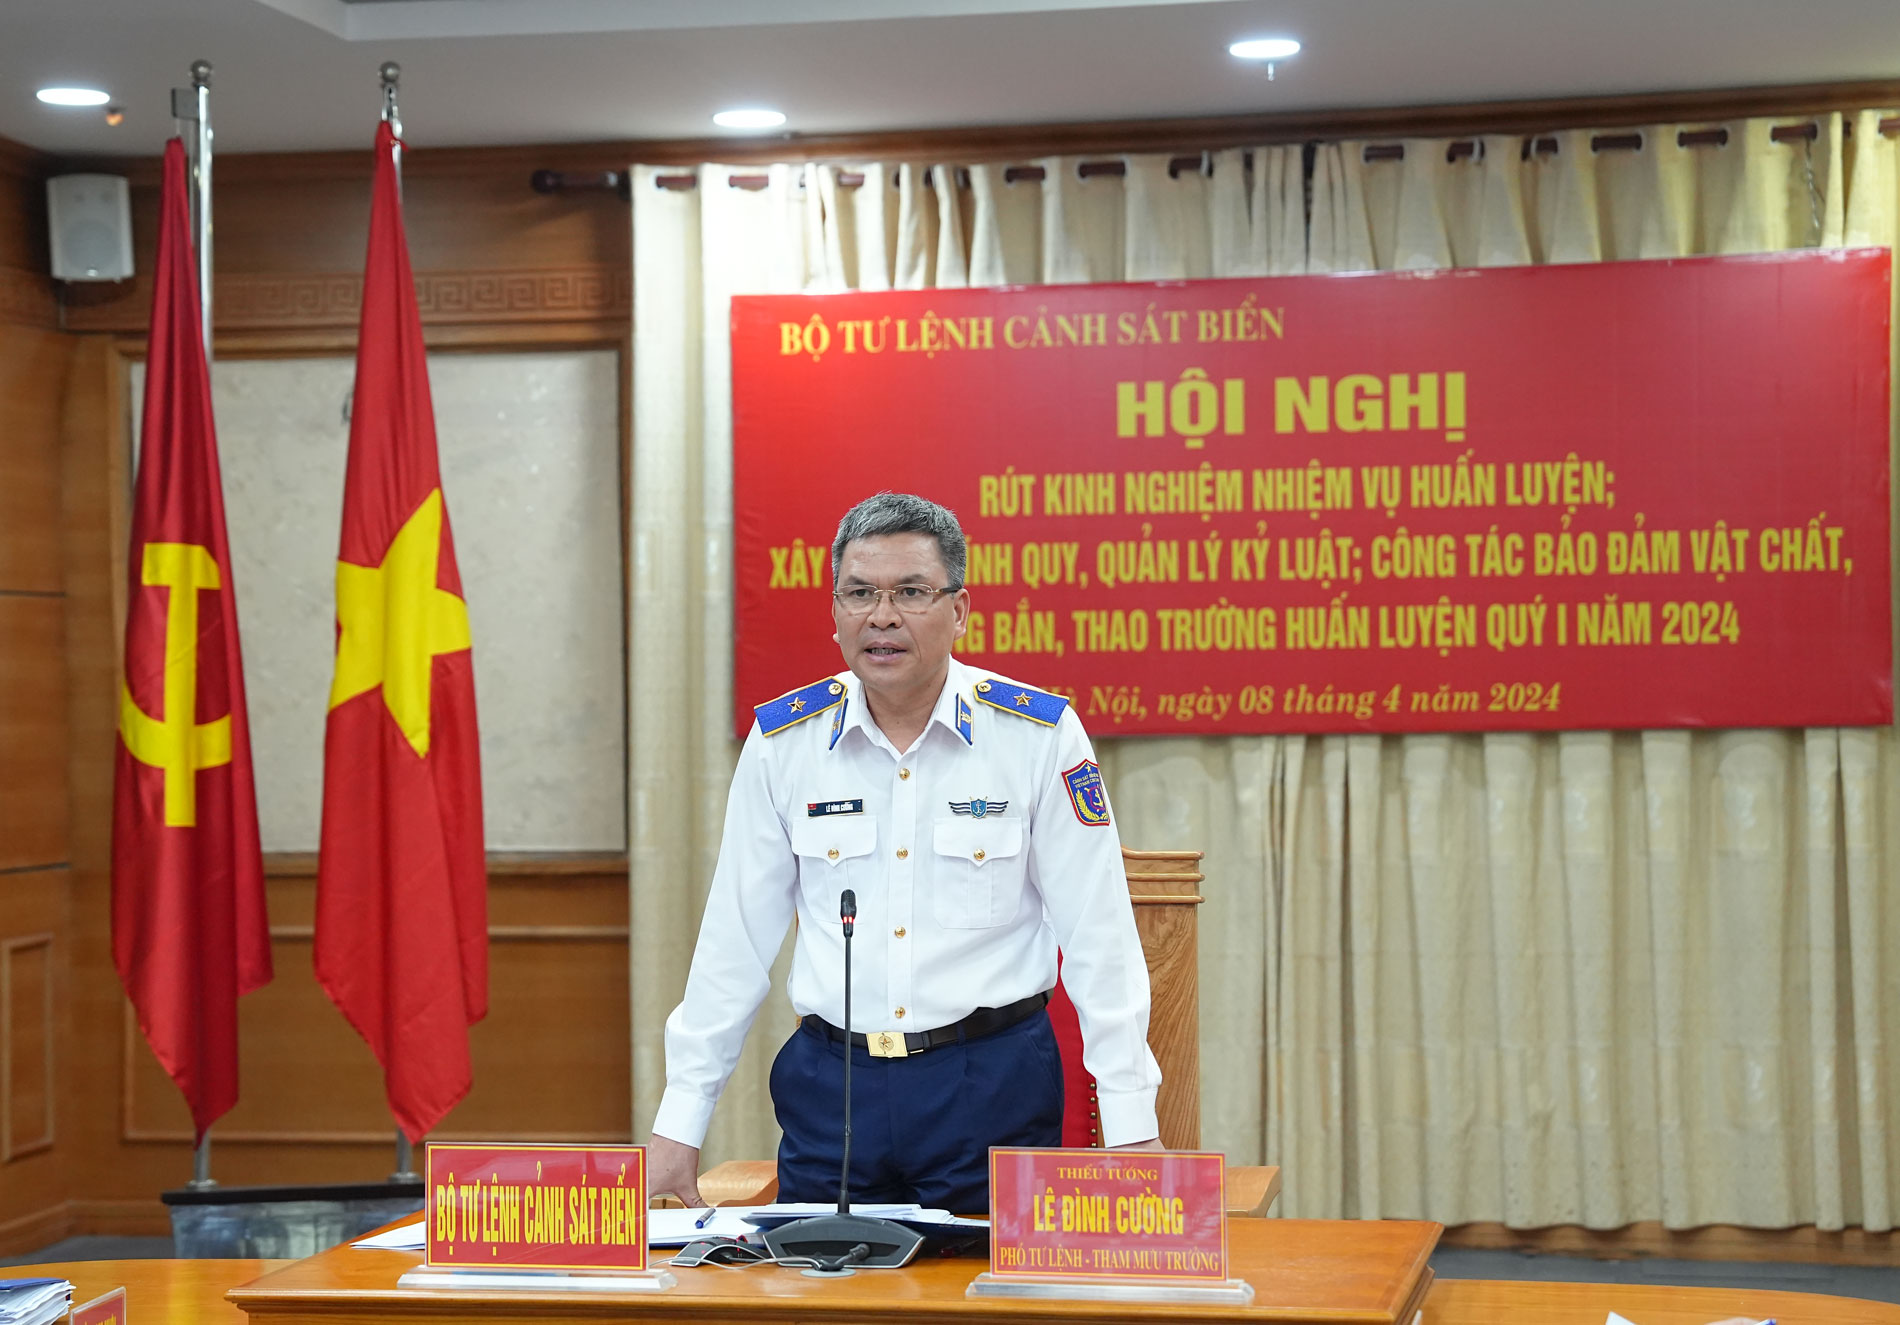 Thiếu tướng Lê Đình Cường - Phó Tư lệnh, Tham mưu trưởng Cảnh sát biển Việt Nam